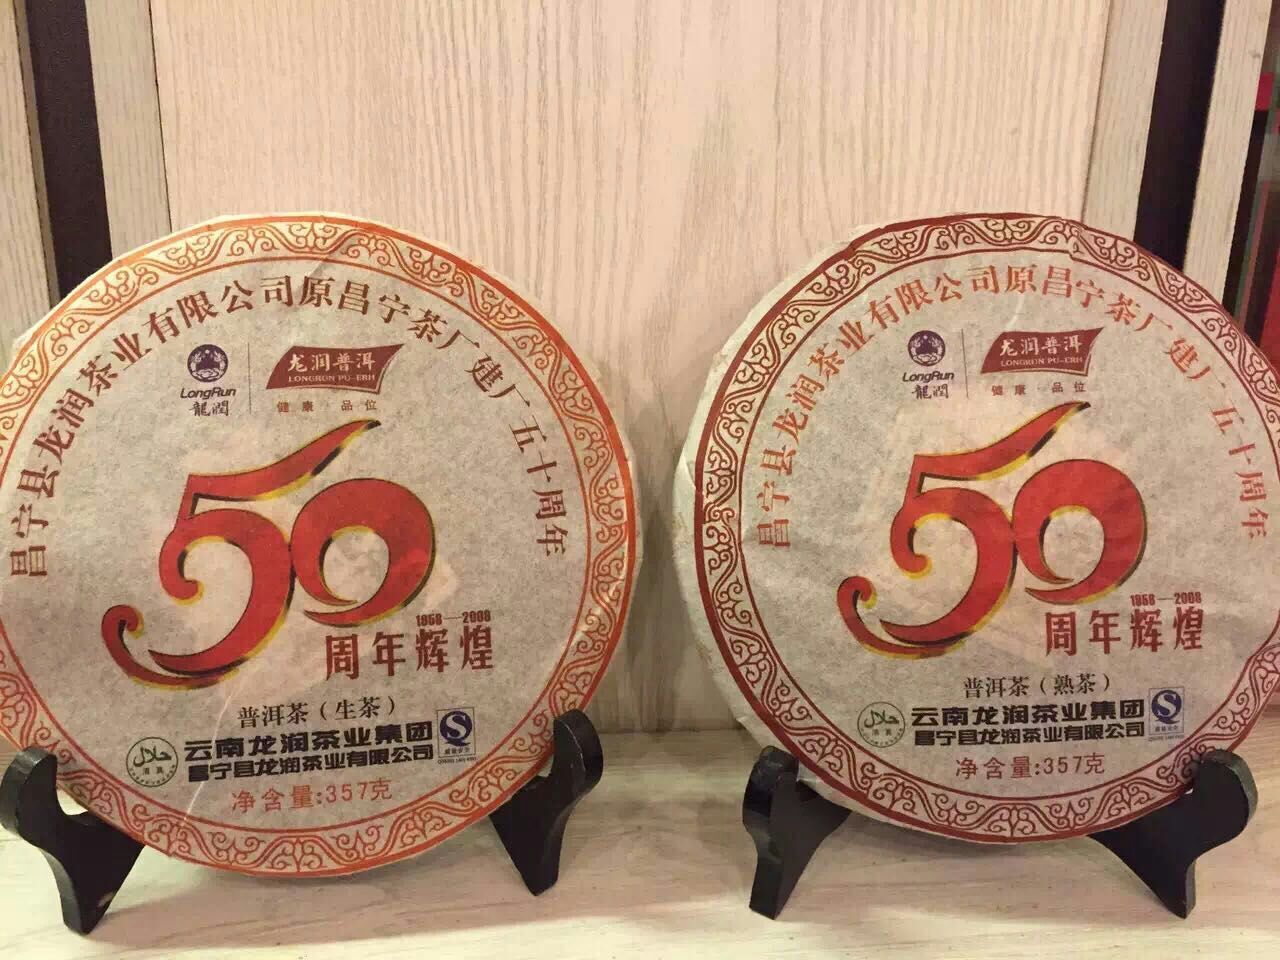 正品云南龙润普洱 07年昌宁茶厂建厂50周年辉煌纪念 熟茶357克